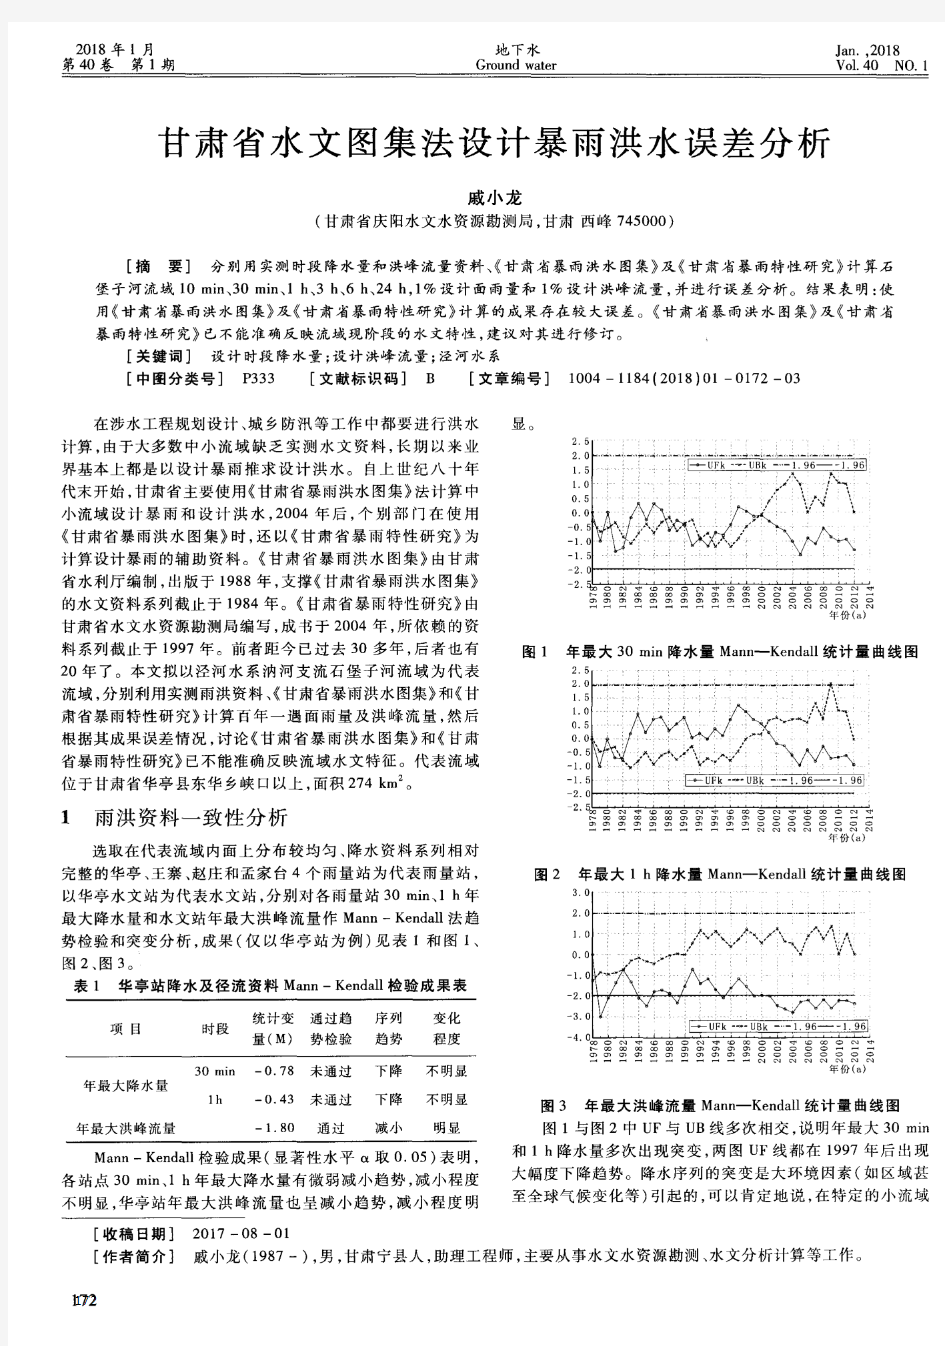 甘肃省水文图集法设计暴雨洪水误差分析